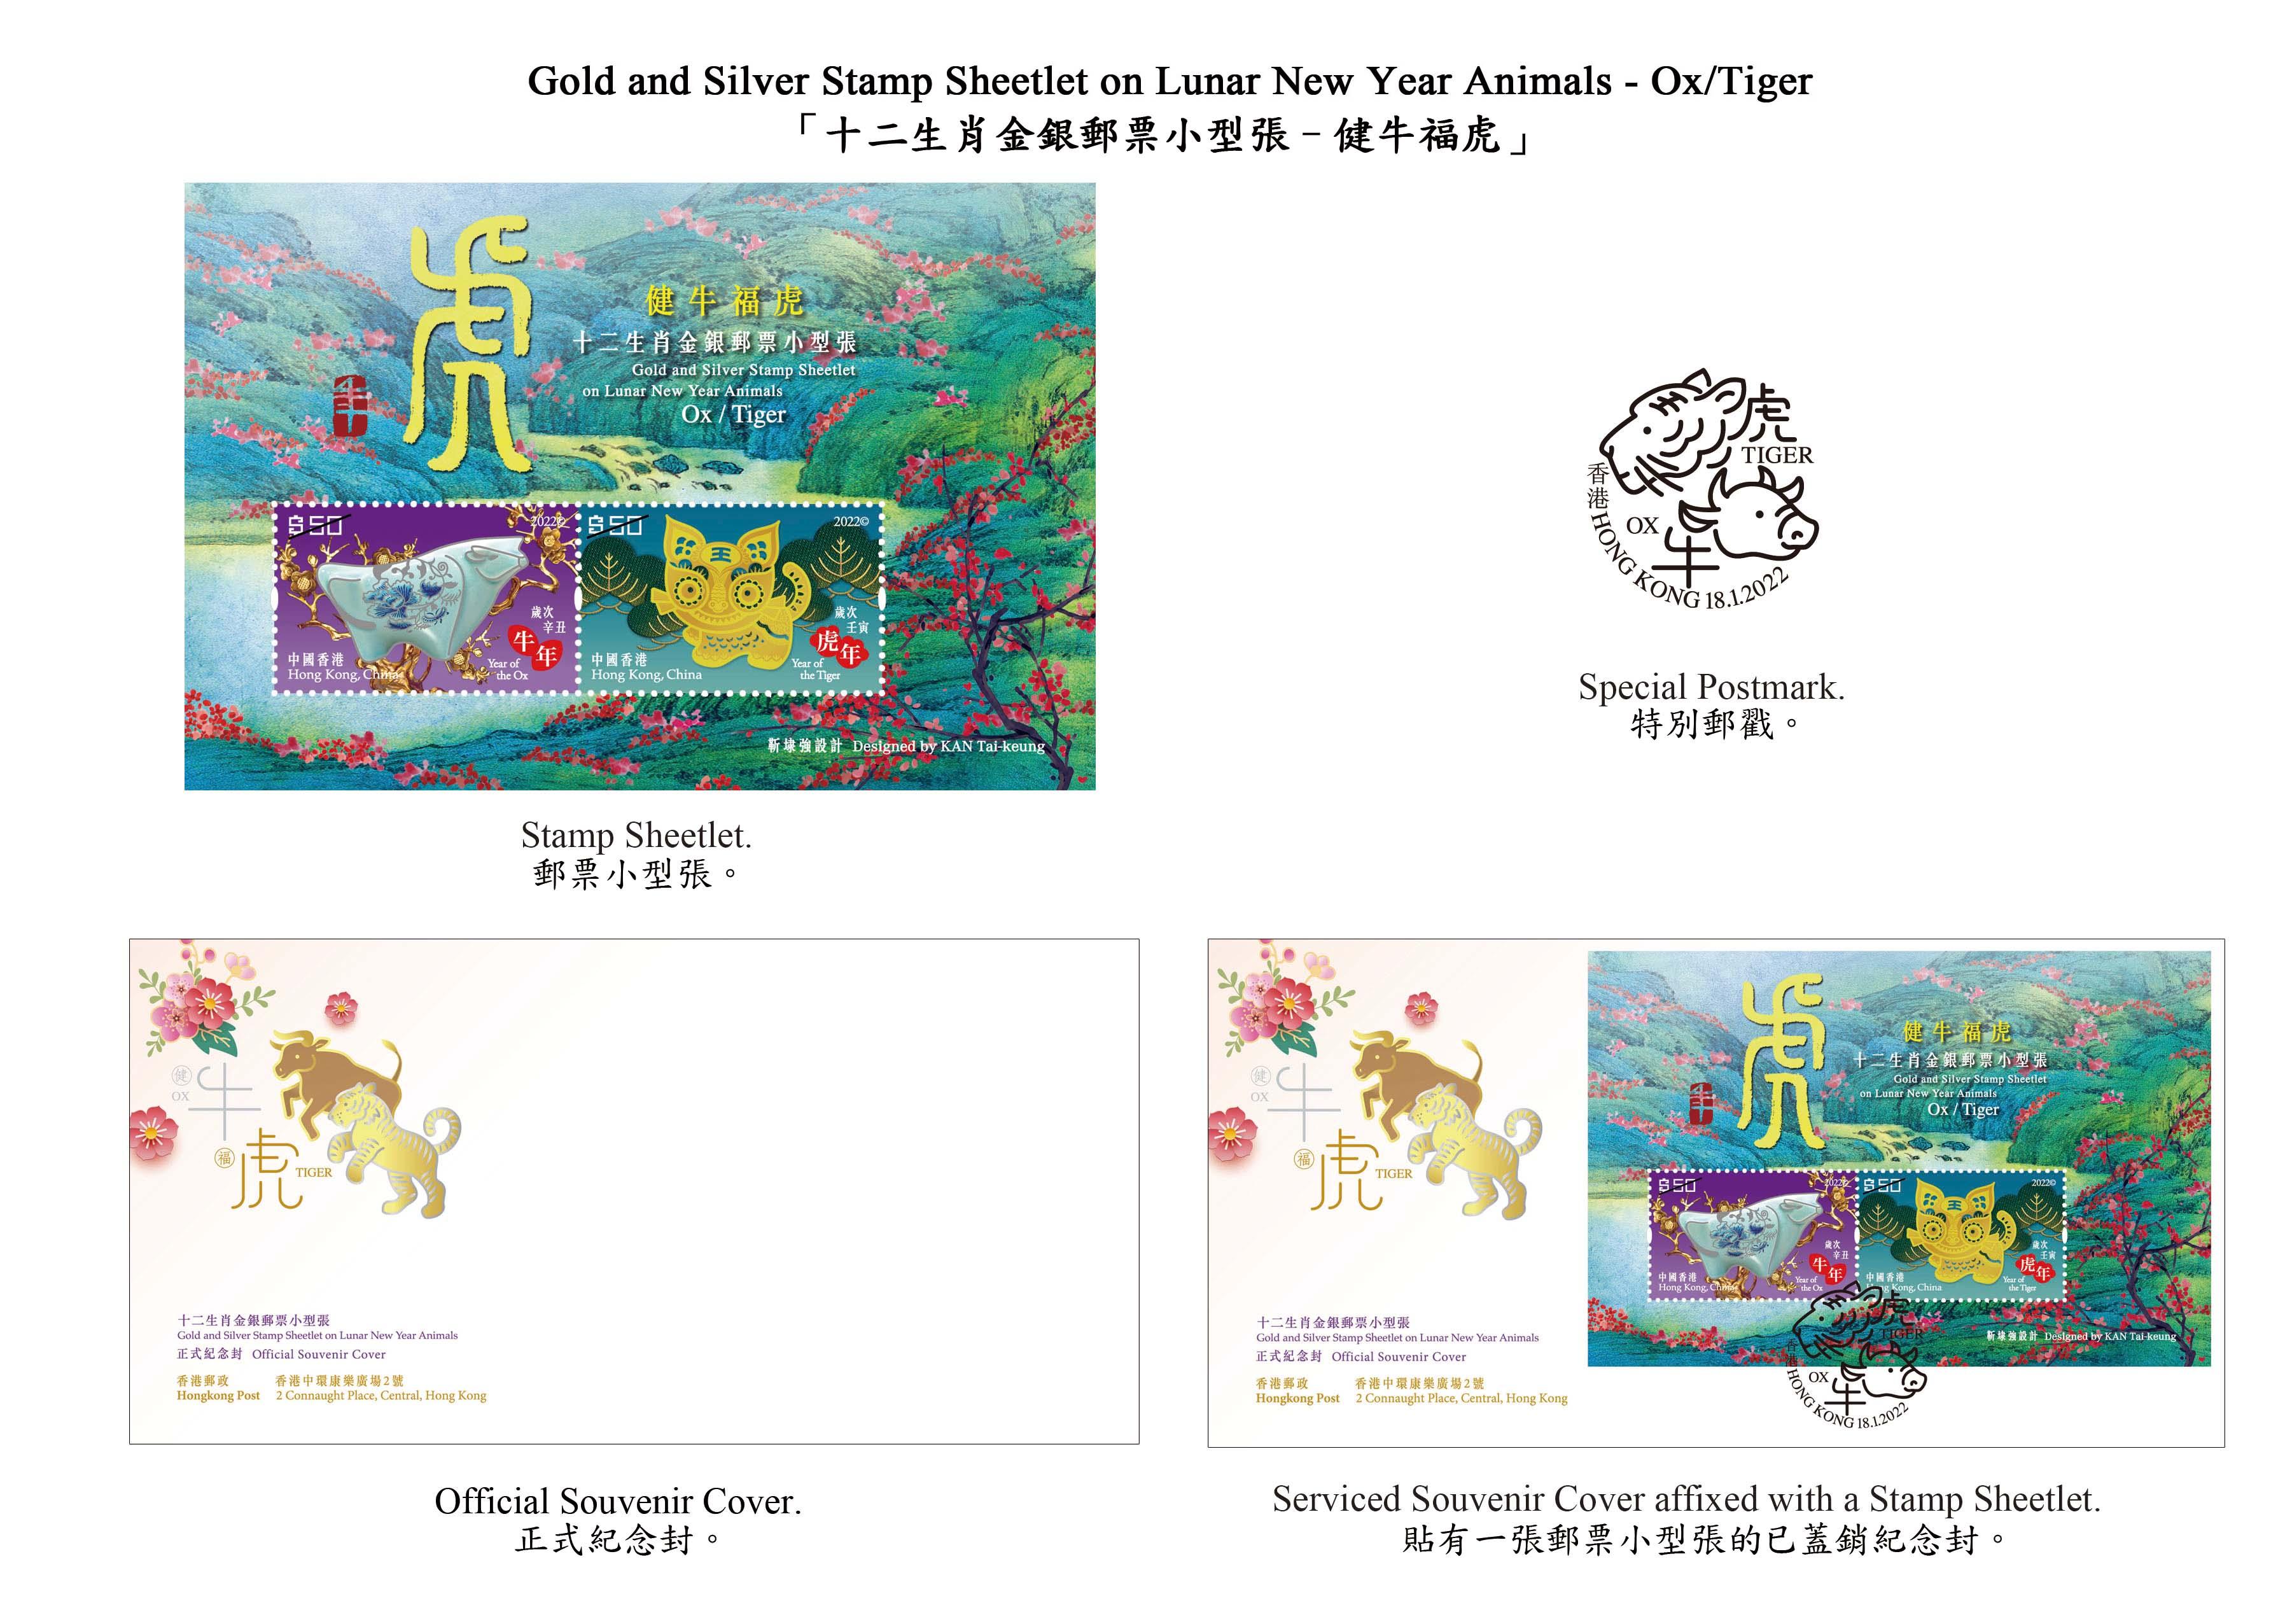 香港郵政一月十八日（星期二）發行以「歲次壬寅（虎年）」為題的特別郵票及相關集郵品，同日亦推出「十二生肖金銀郵票小型張──健牛福虎」。圖示以「健牛福虎」為題的郵票小型張、紀念封和特別郵戳。 